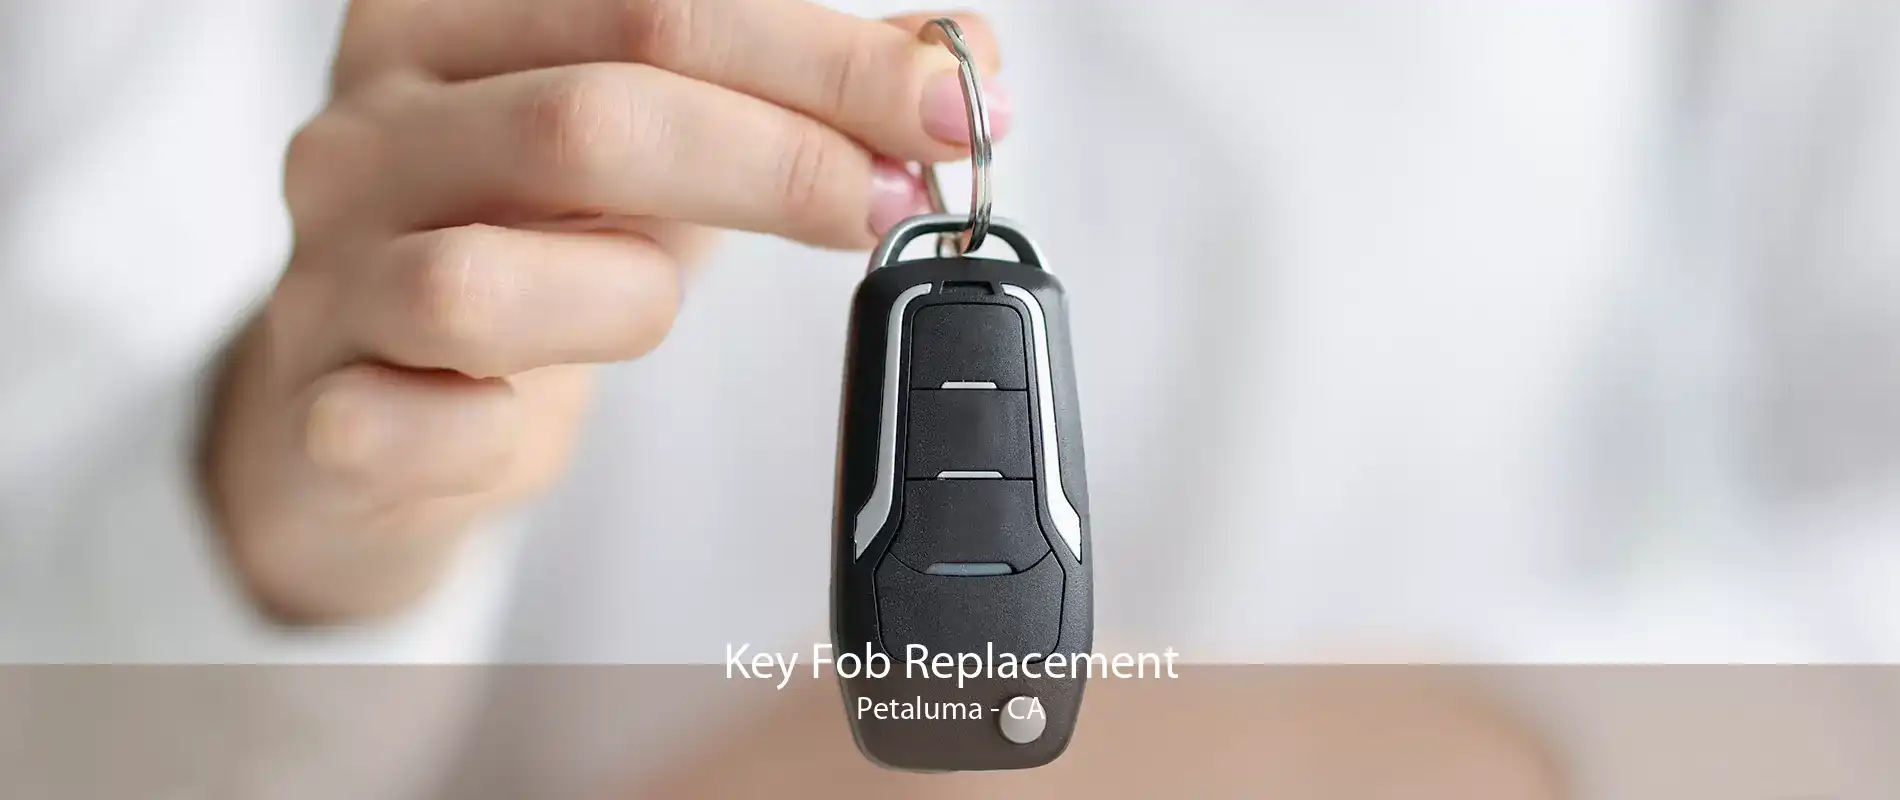 Key Fob Replacement Petaluma - CA